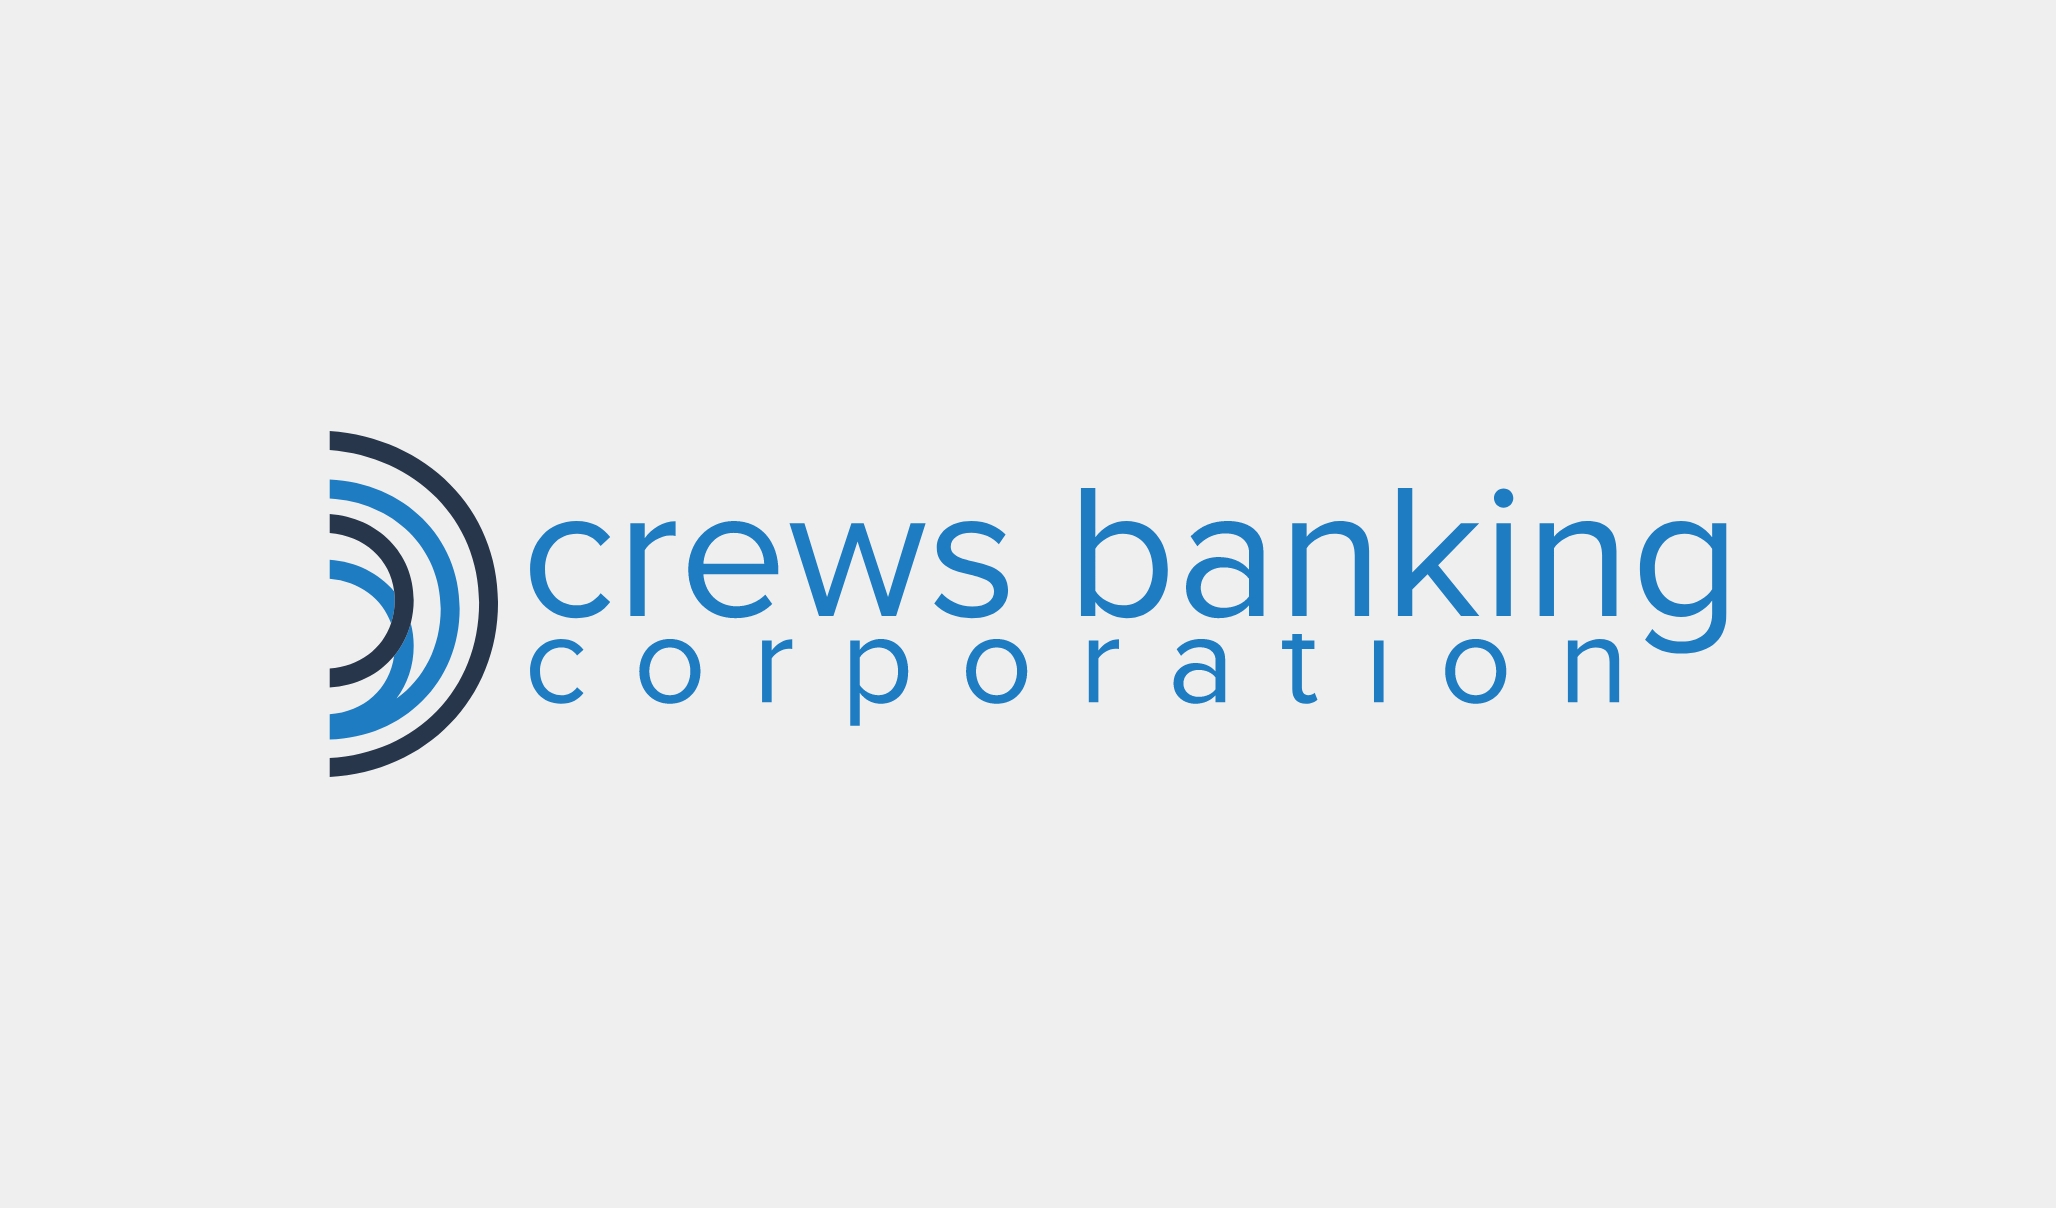 Crews Banking Corp